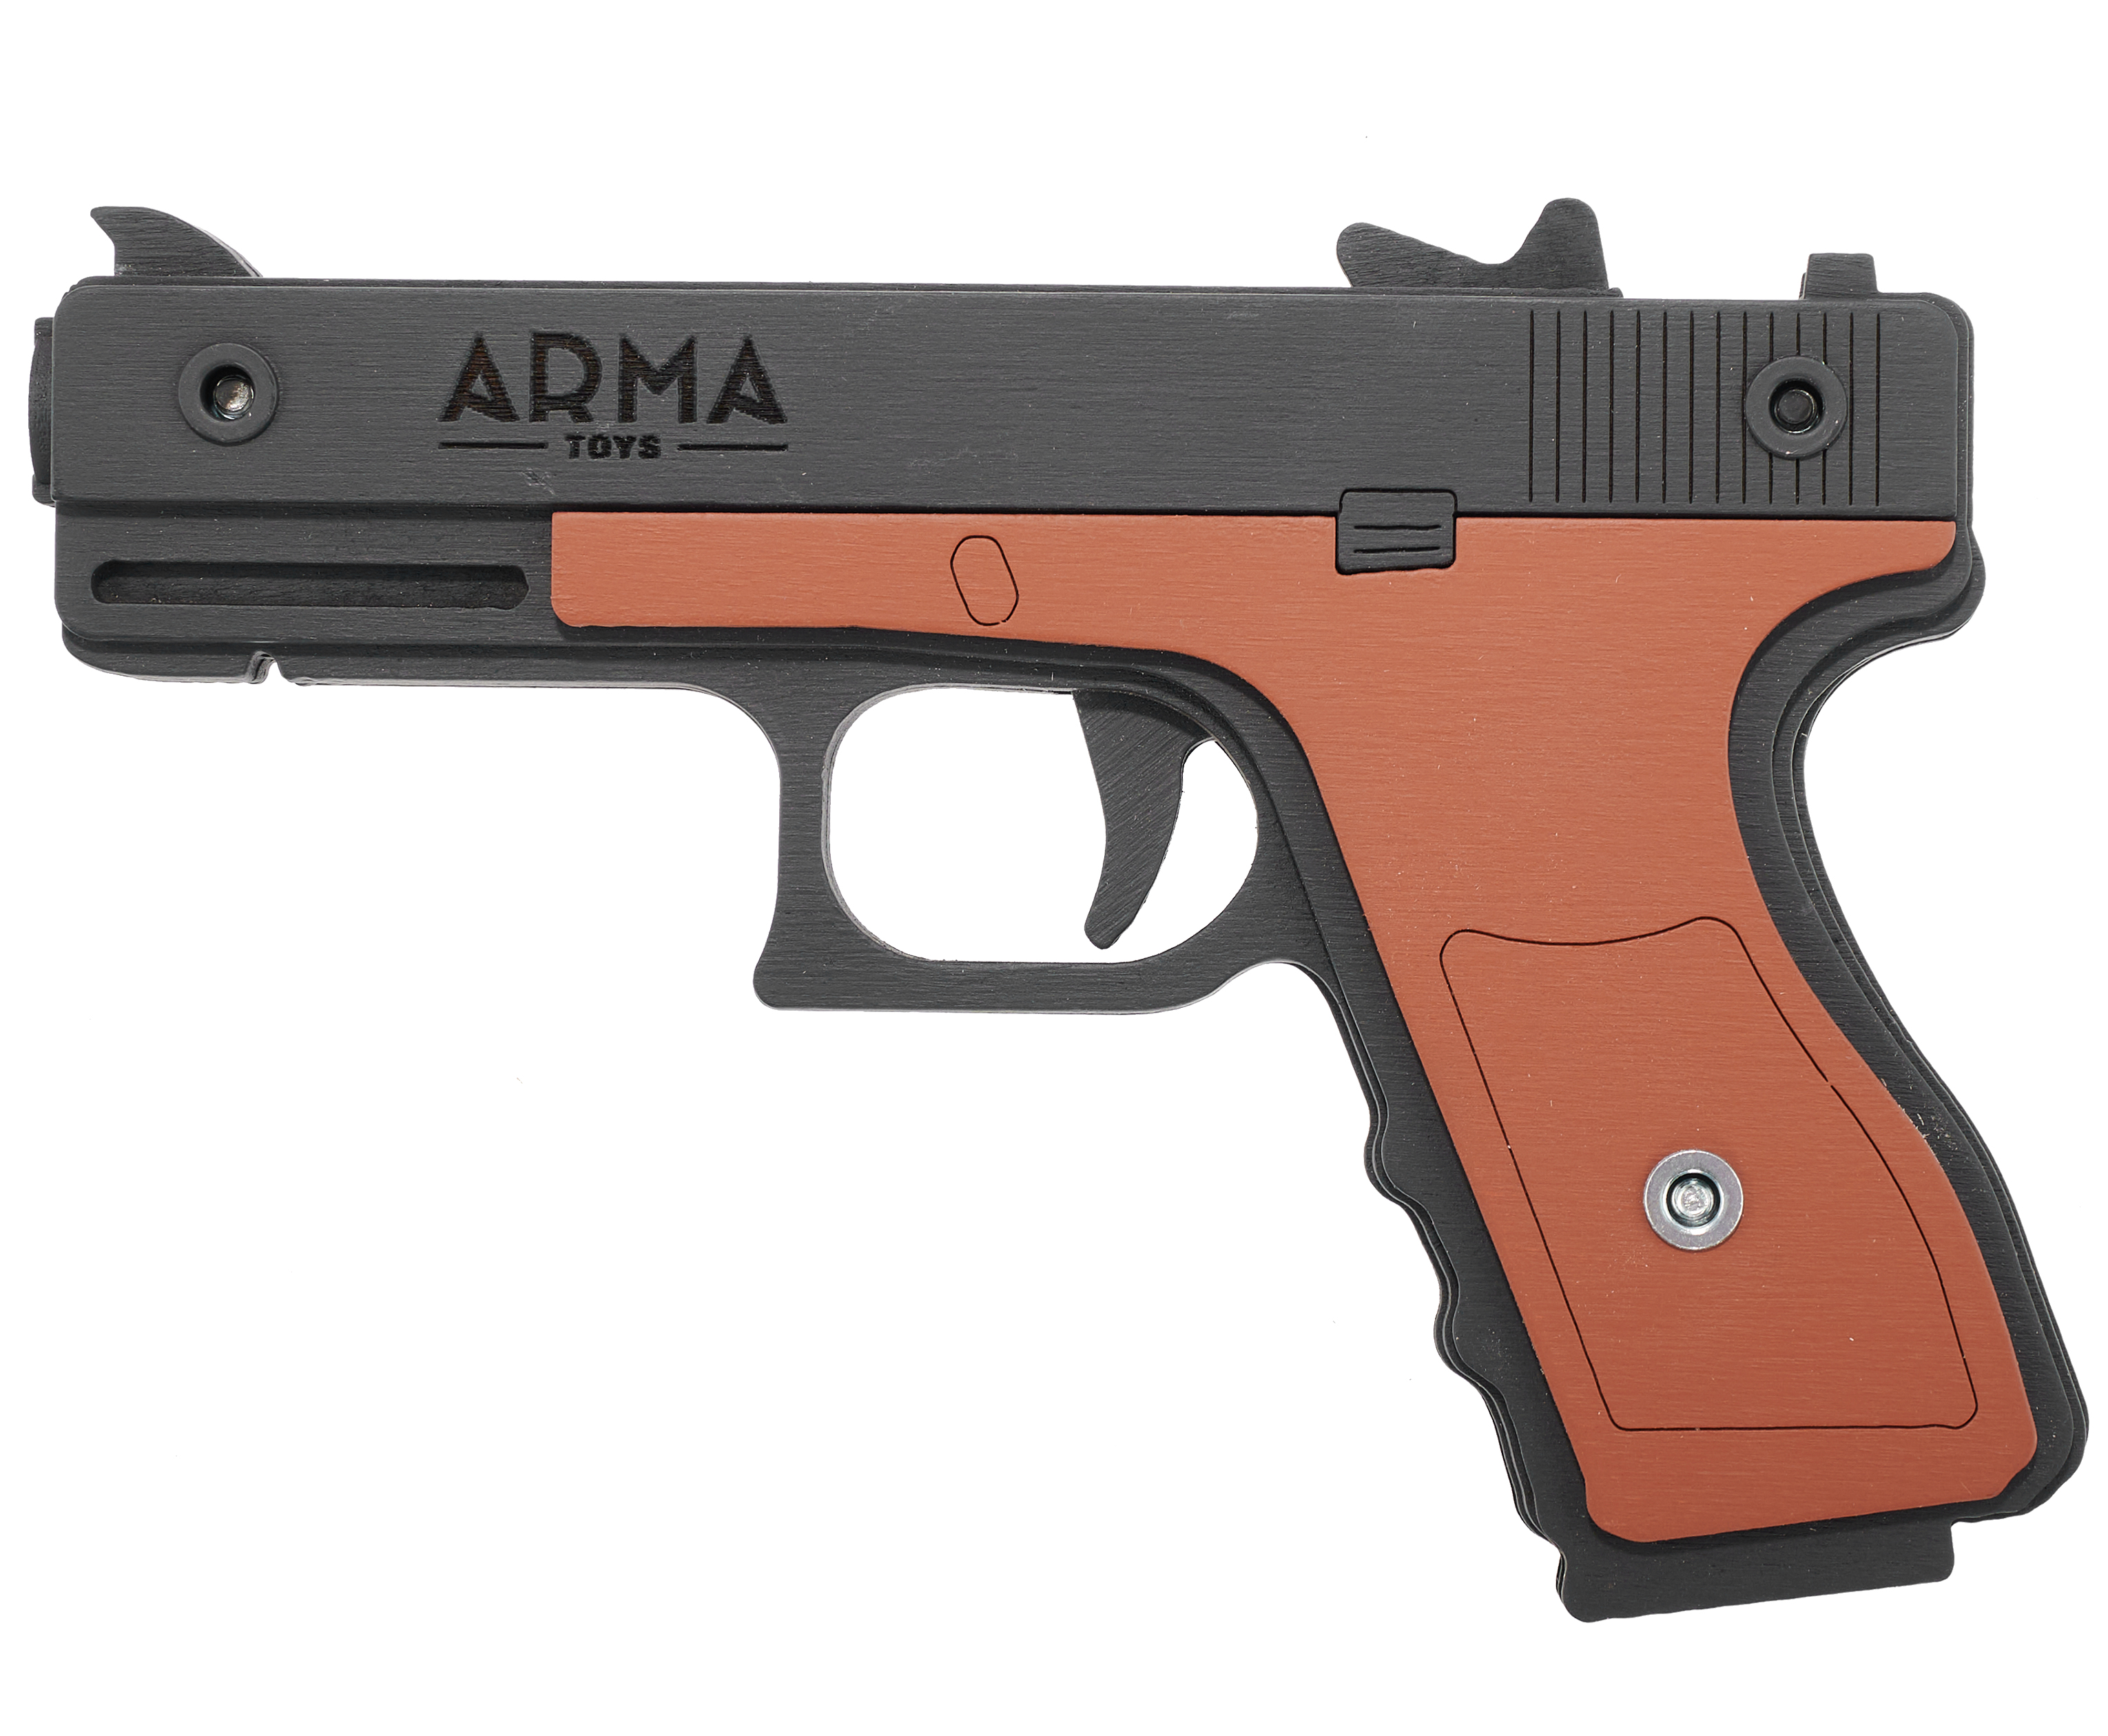 Резинкострел игрушечный Arma toys пистолет Glock макет, AT013K, окрашенный